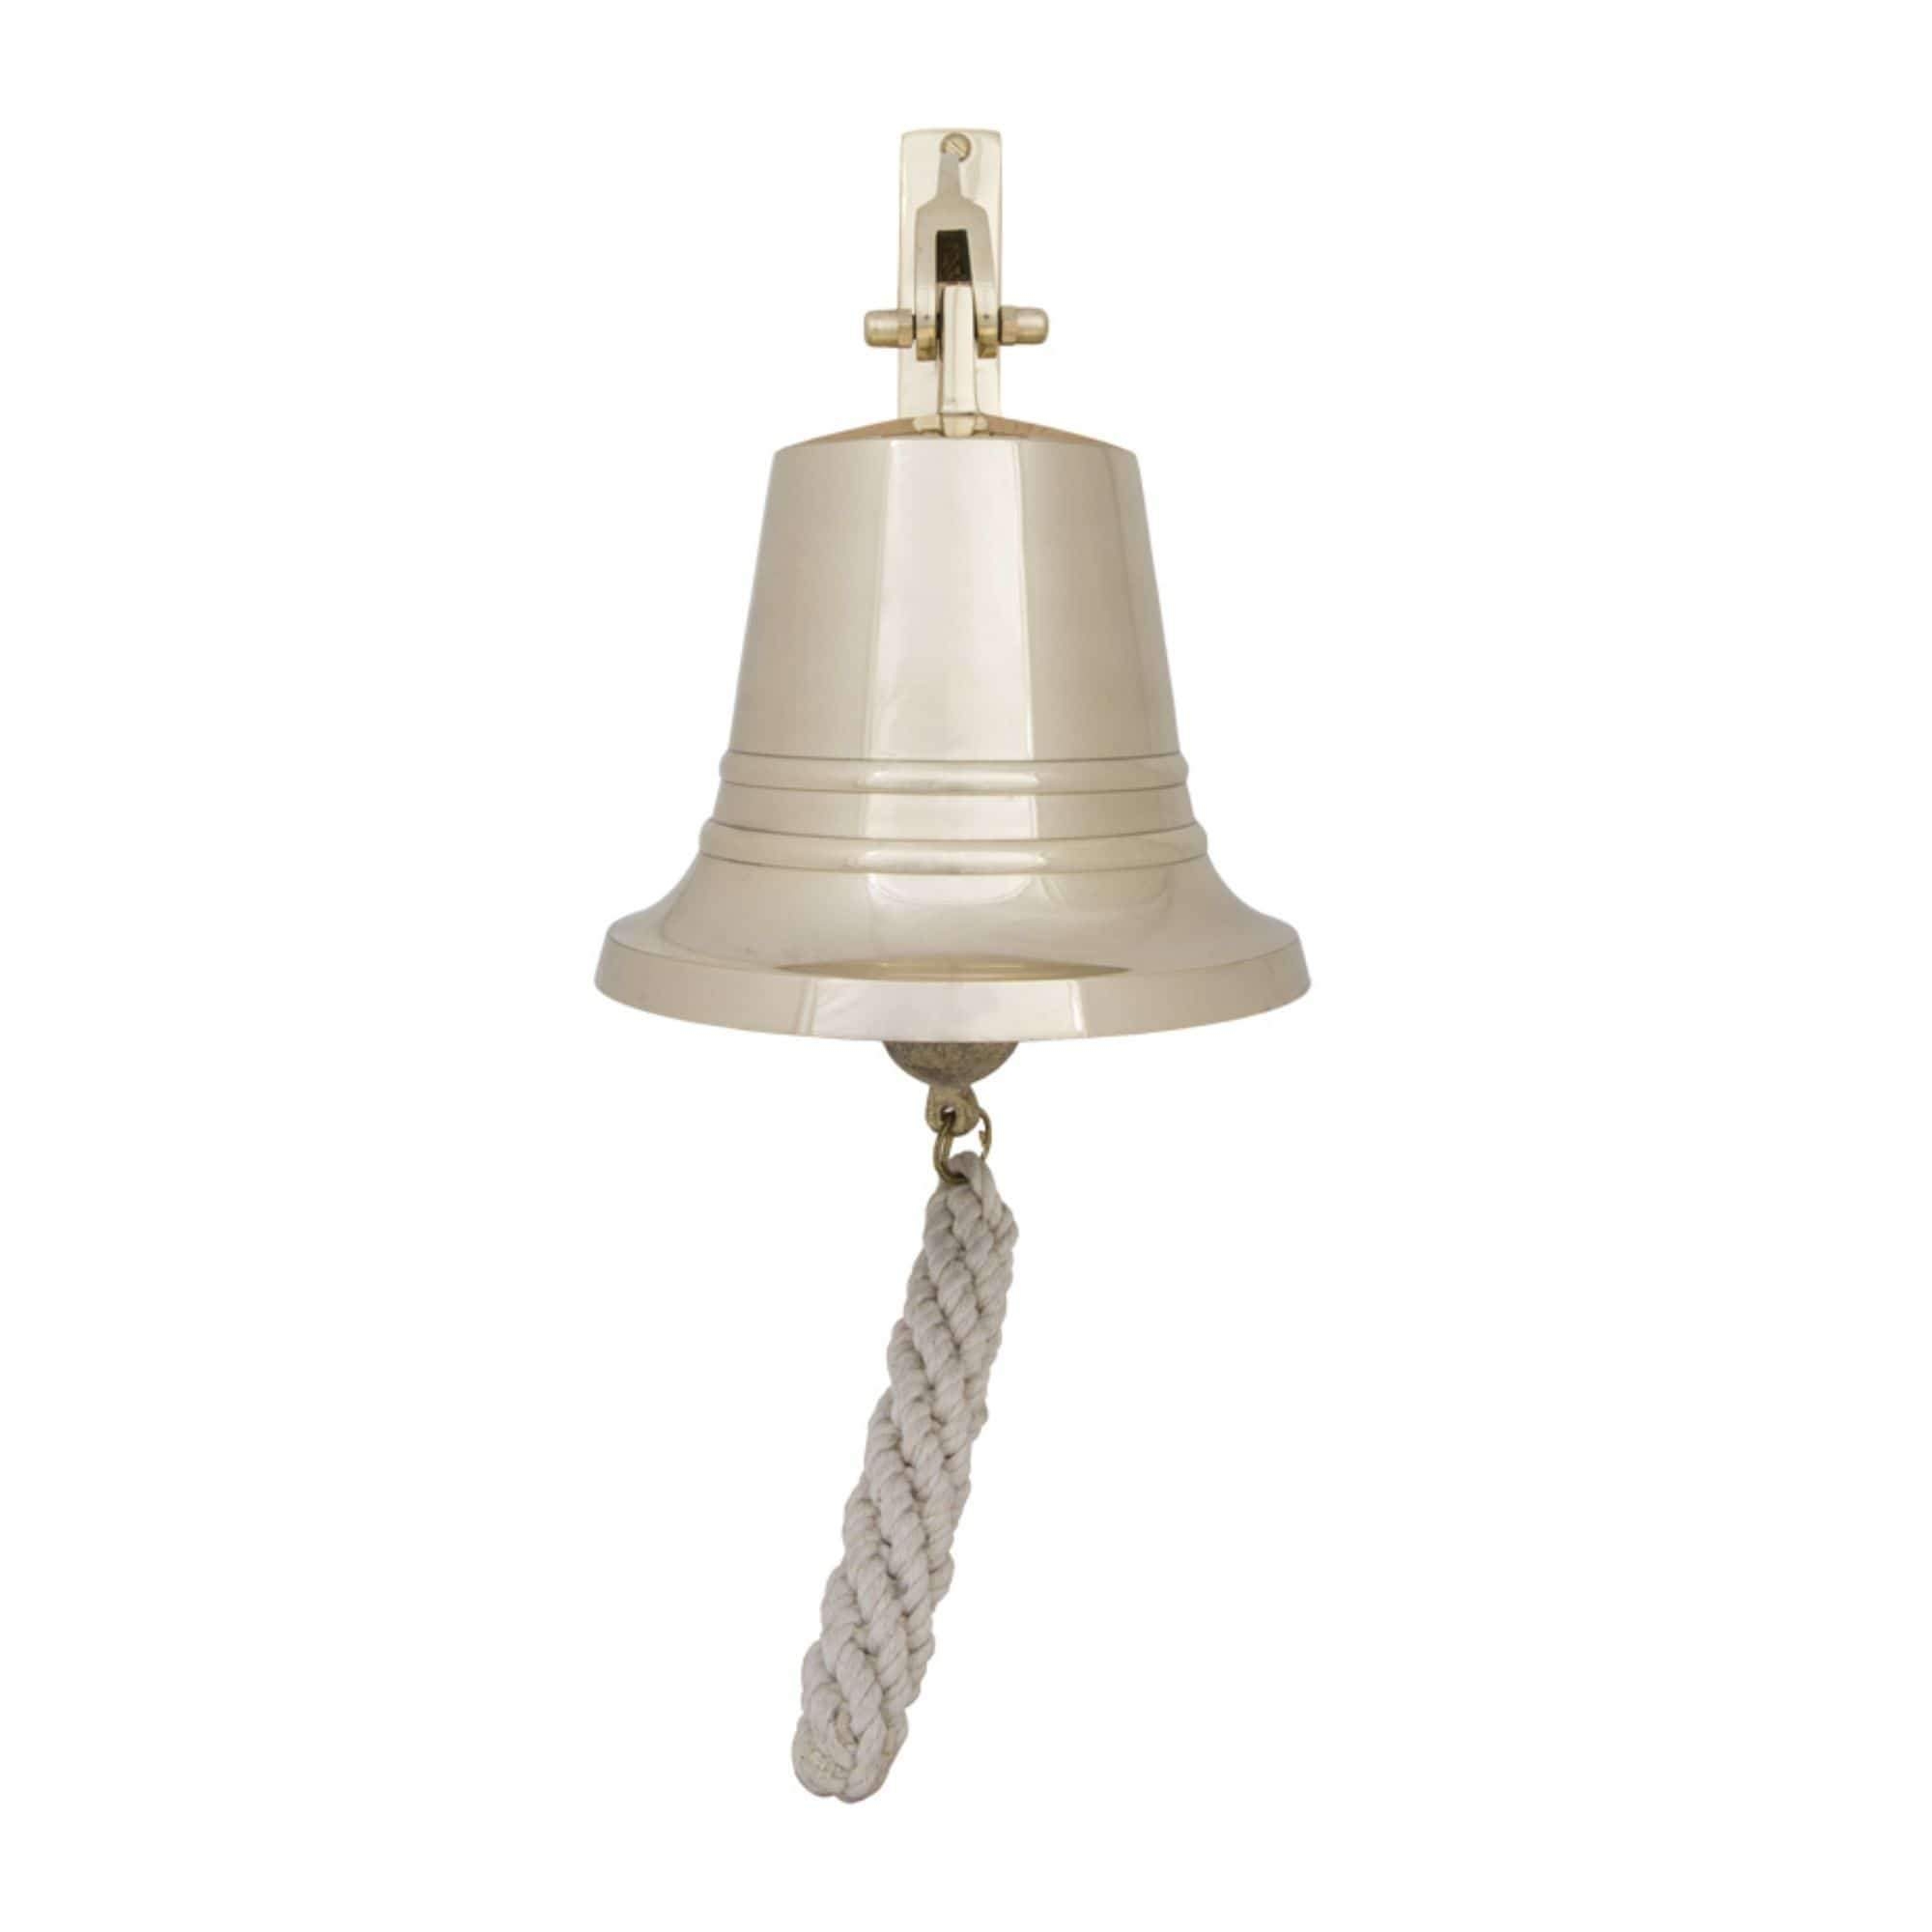 Bell – Solid Brass – 23 cm